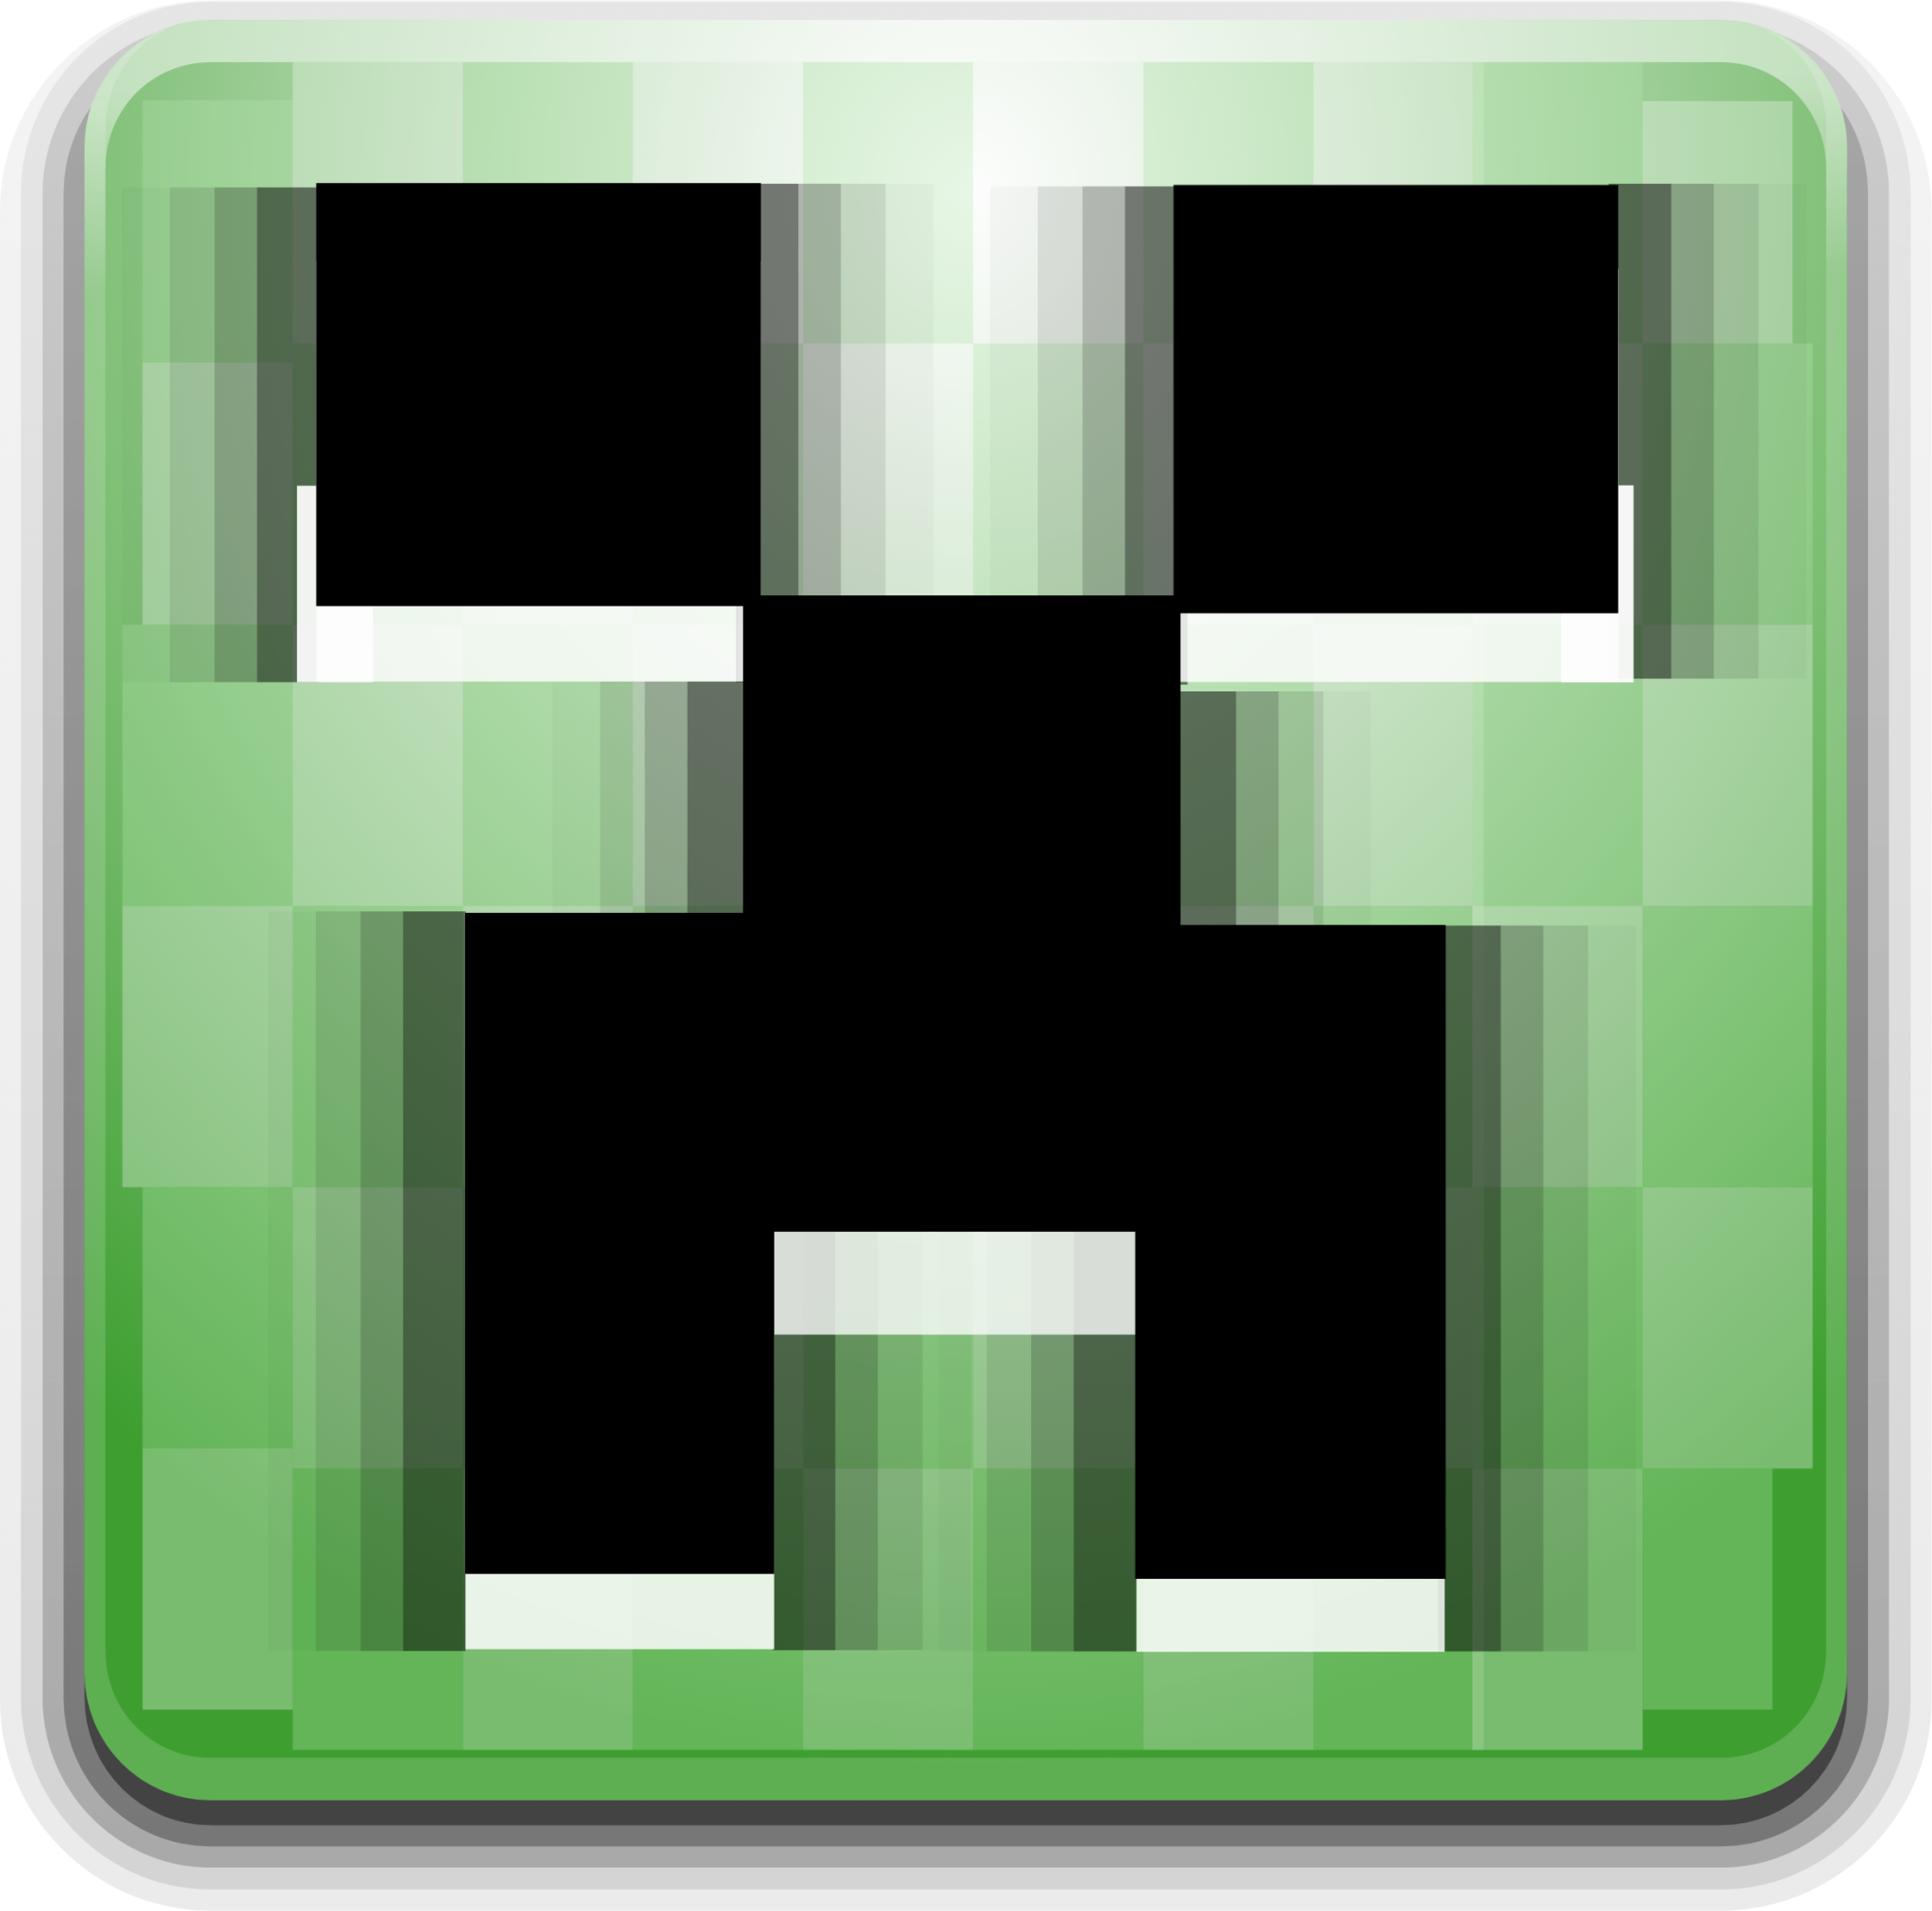 minecraft icon